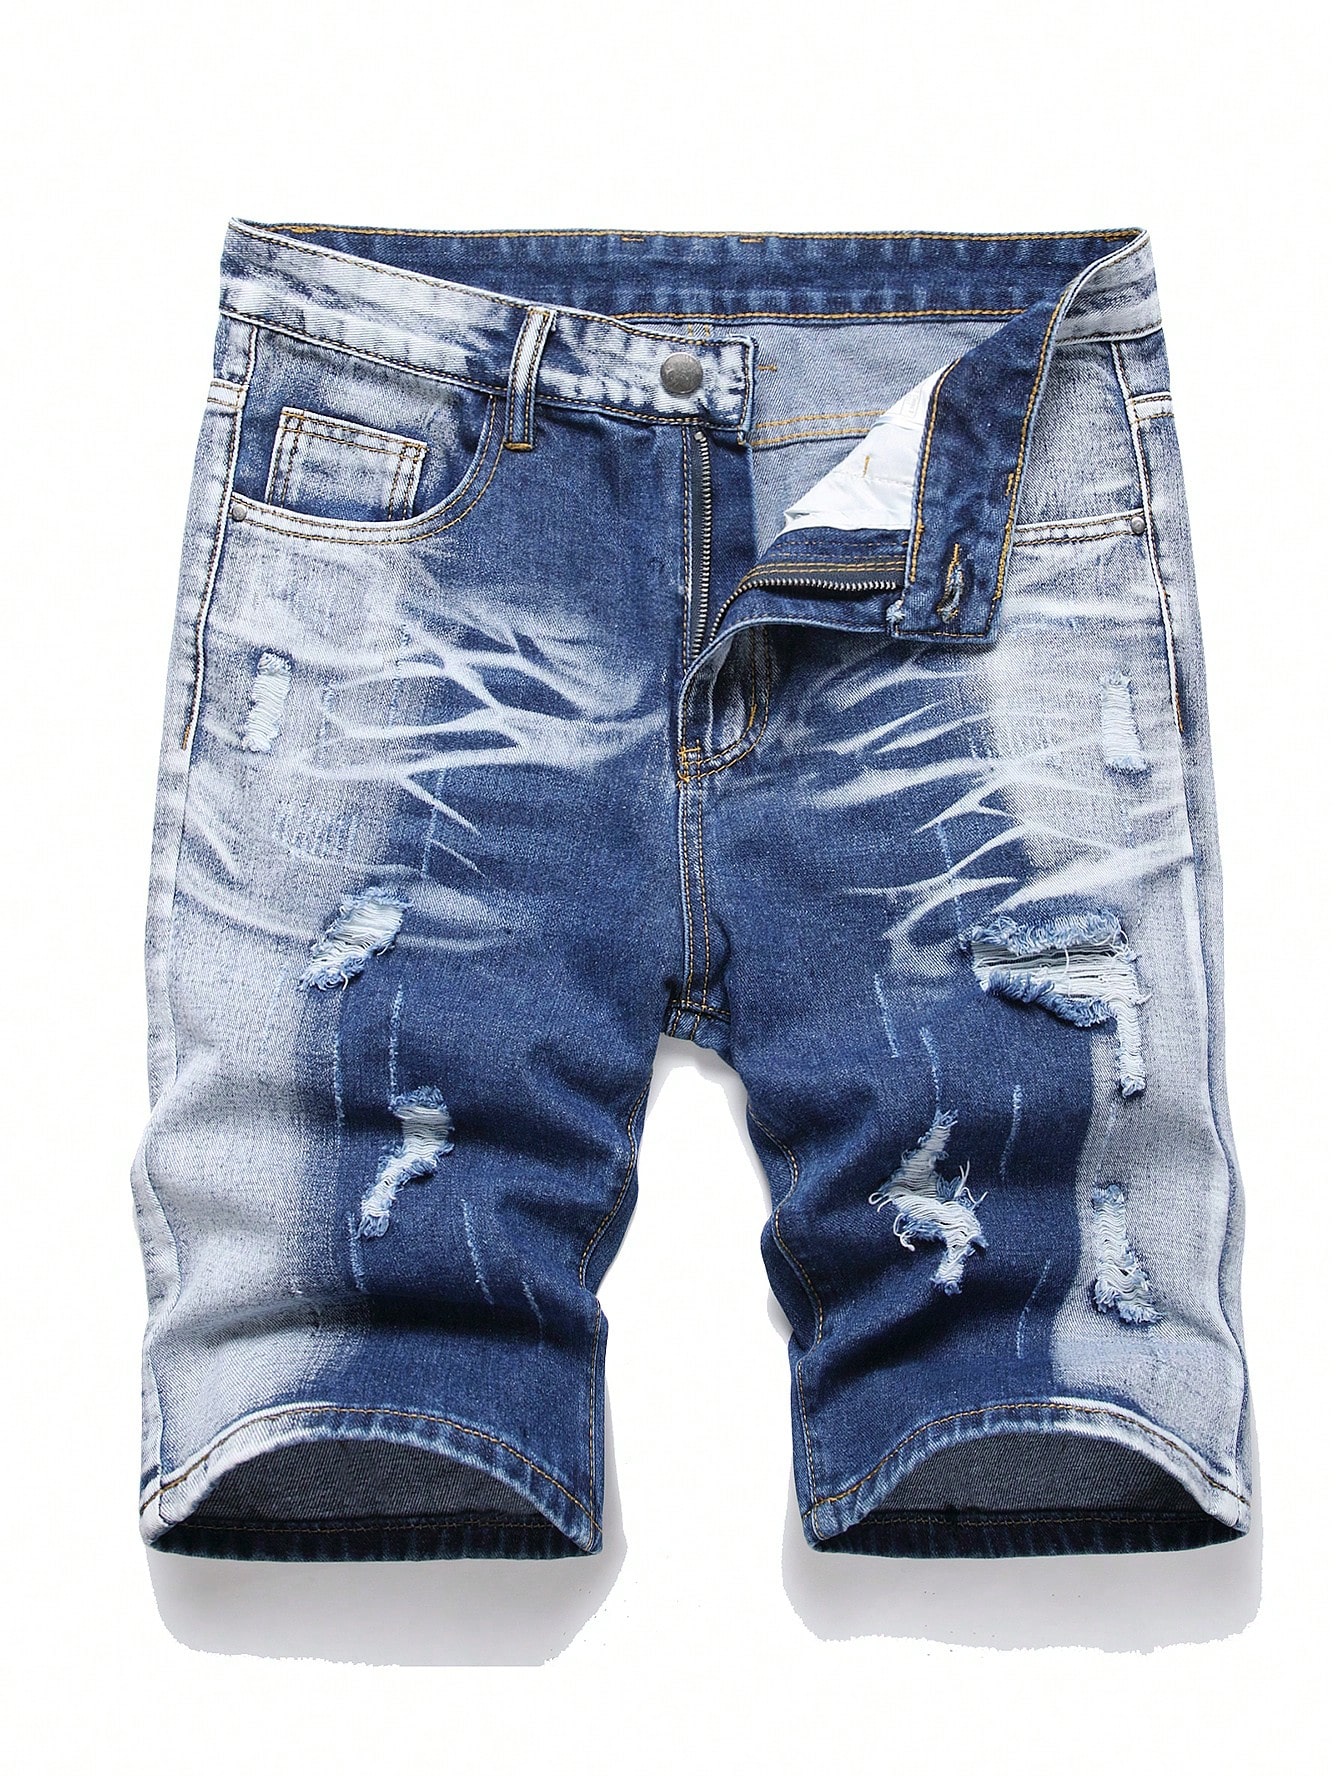 Мужские джинсовые шорты с потертостями в европейском и американском стиле, синий и белый